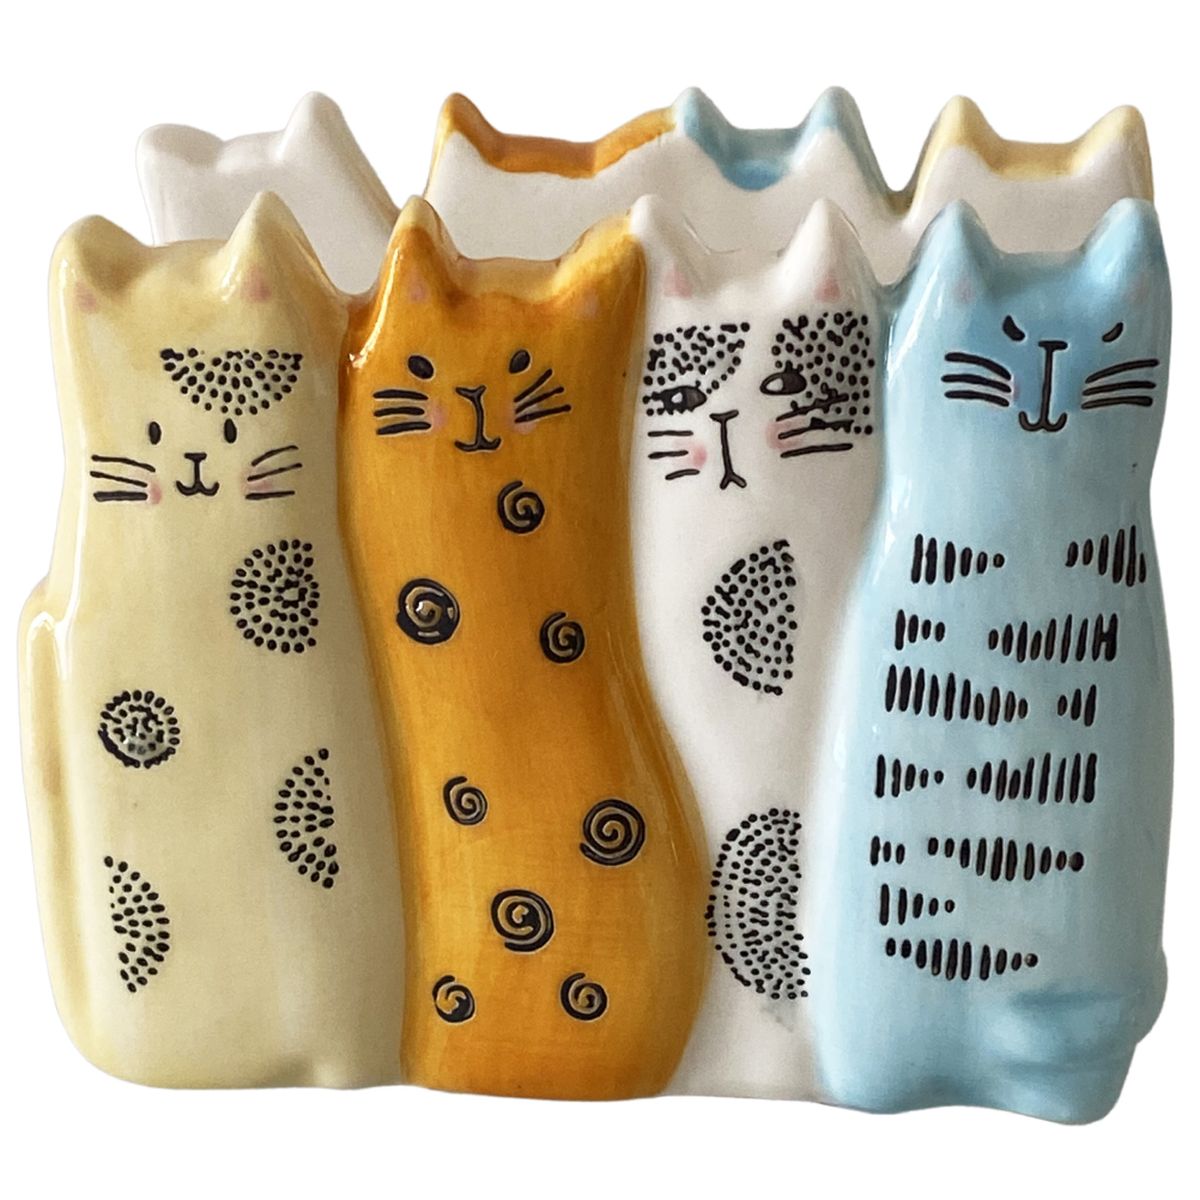 Sponge or towel holder - Cats